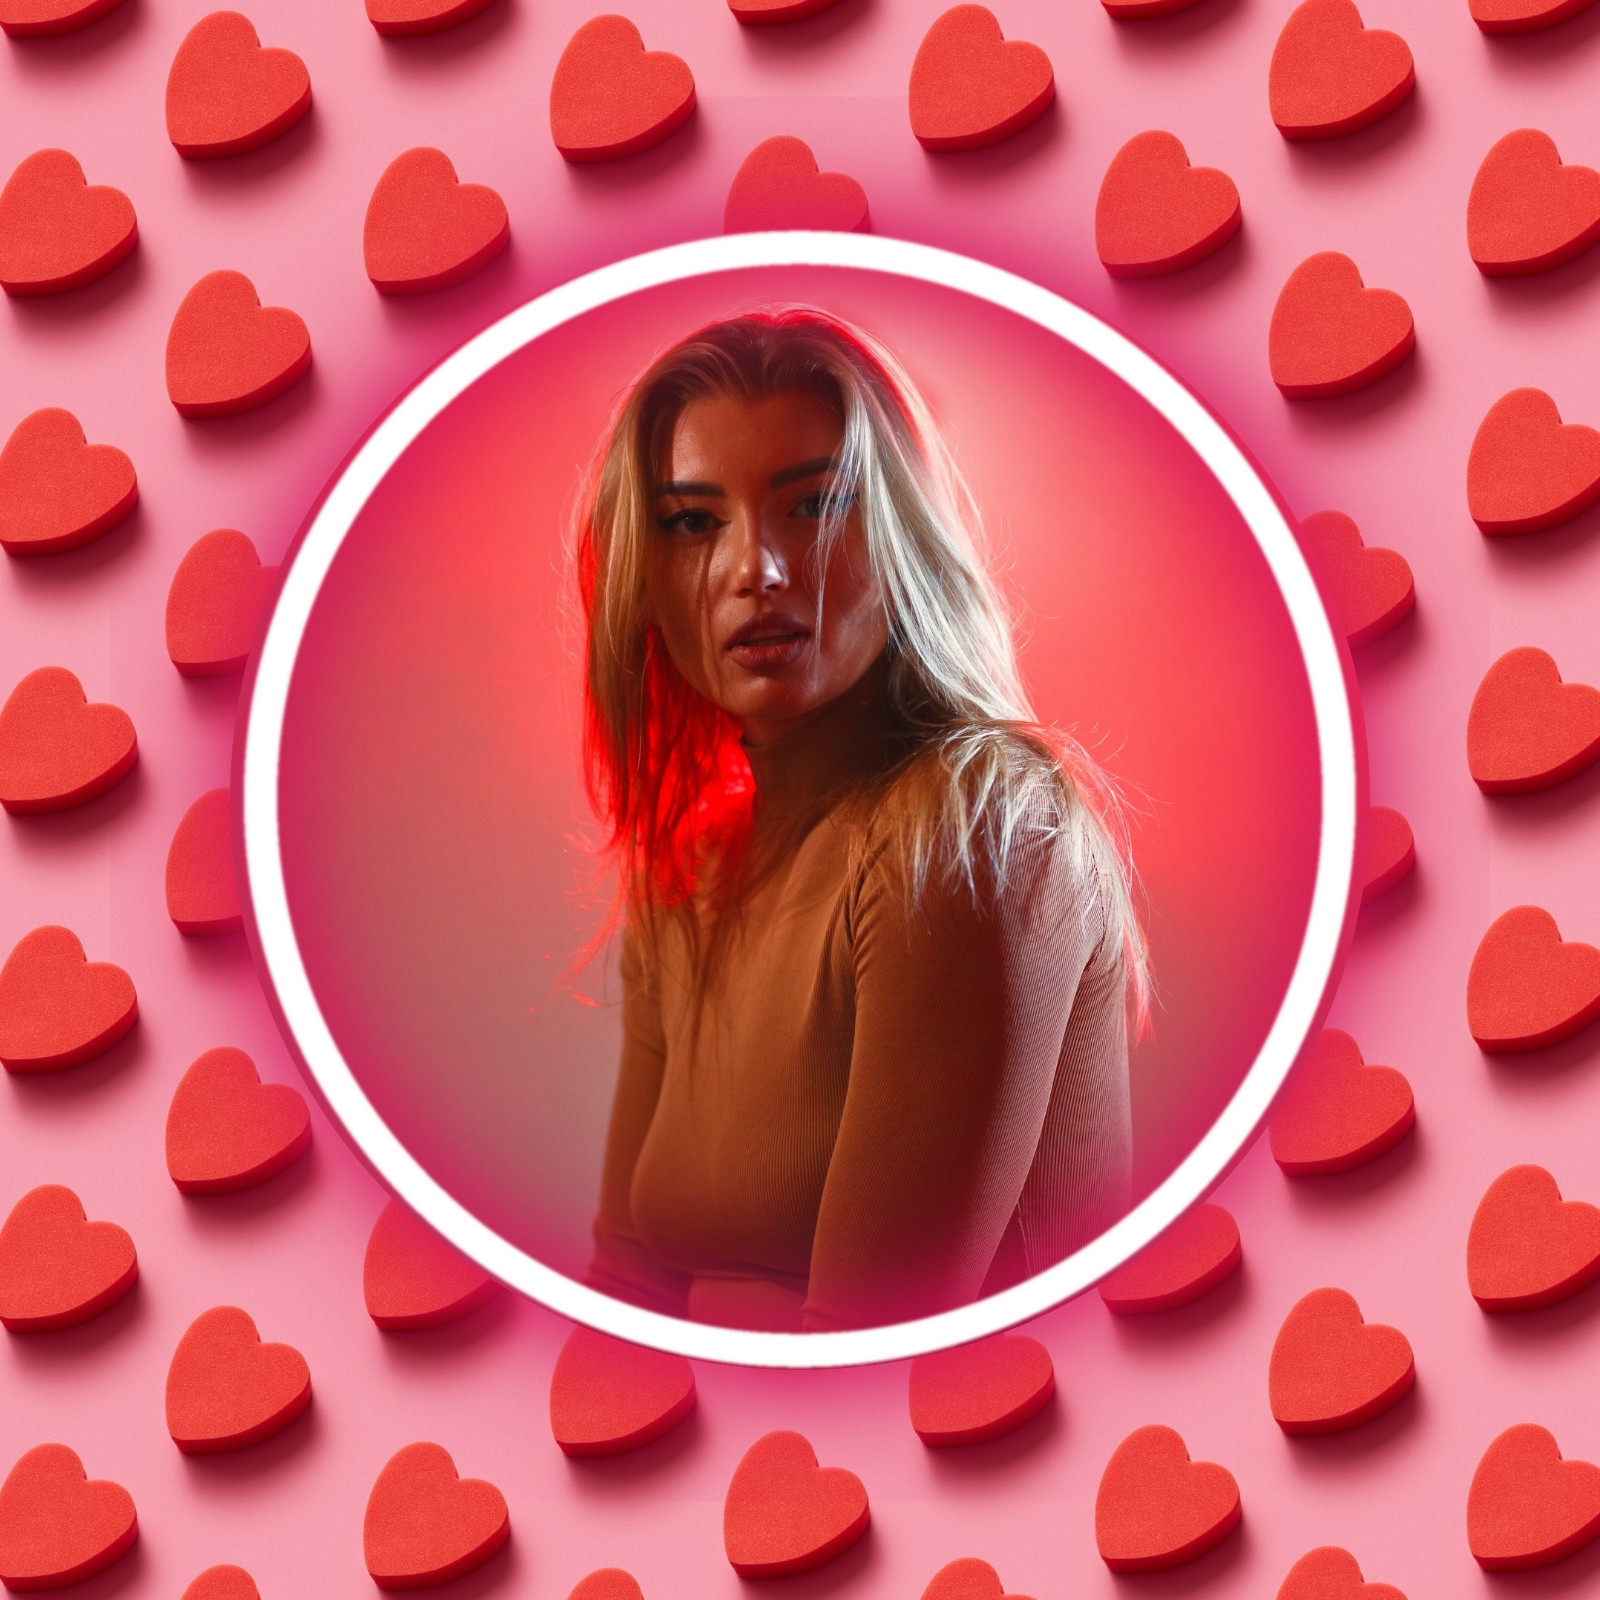 Foto de perfil de Instagram san valentín moderno rosa y rojo